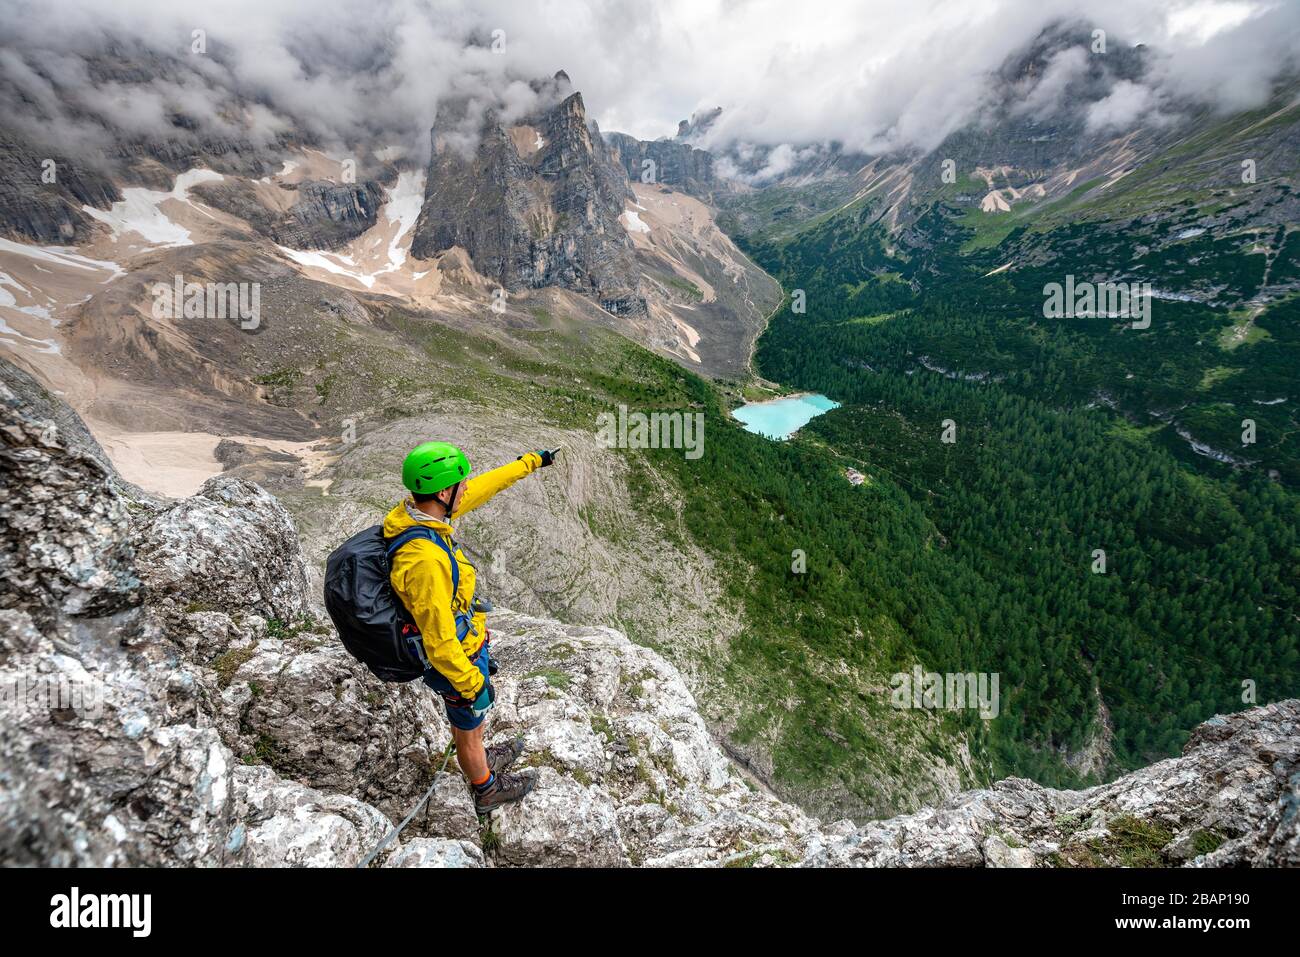 Jeune homme pointe au loin, alpiniste sur une via ferrata Vandelli, vue sur le Lago di Sorapis, le circuit de Sorapiss, les montagnes avec de faibles nuages Banque D'Images